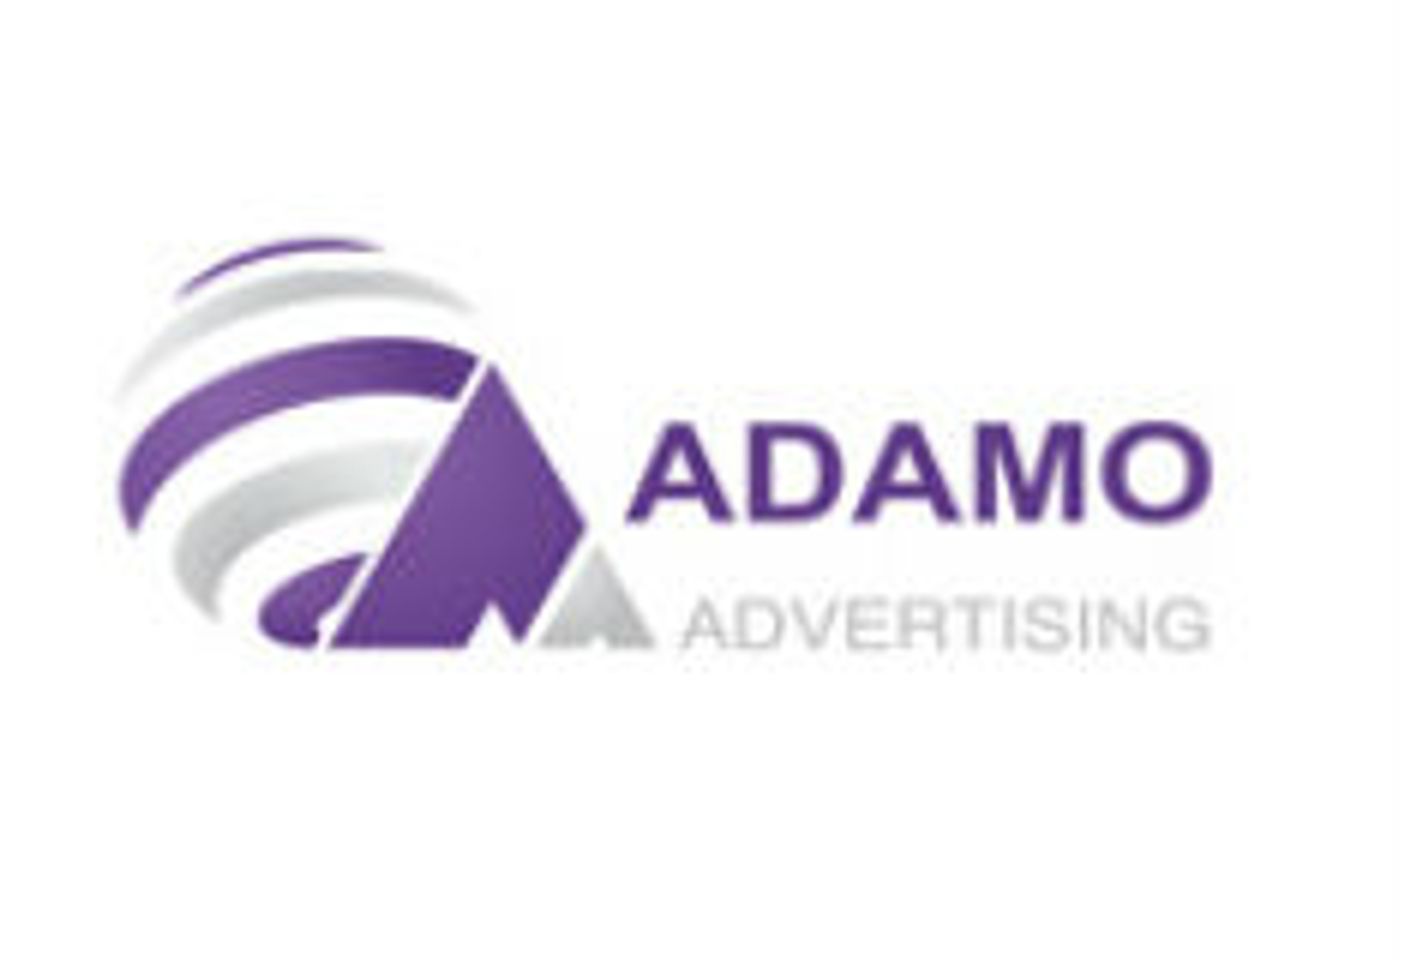 Adamo Advertising, Founder Judy Shalom Nommed For YNOT Awards